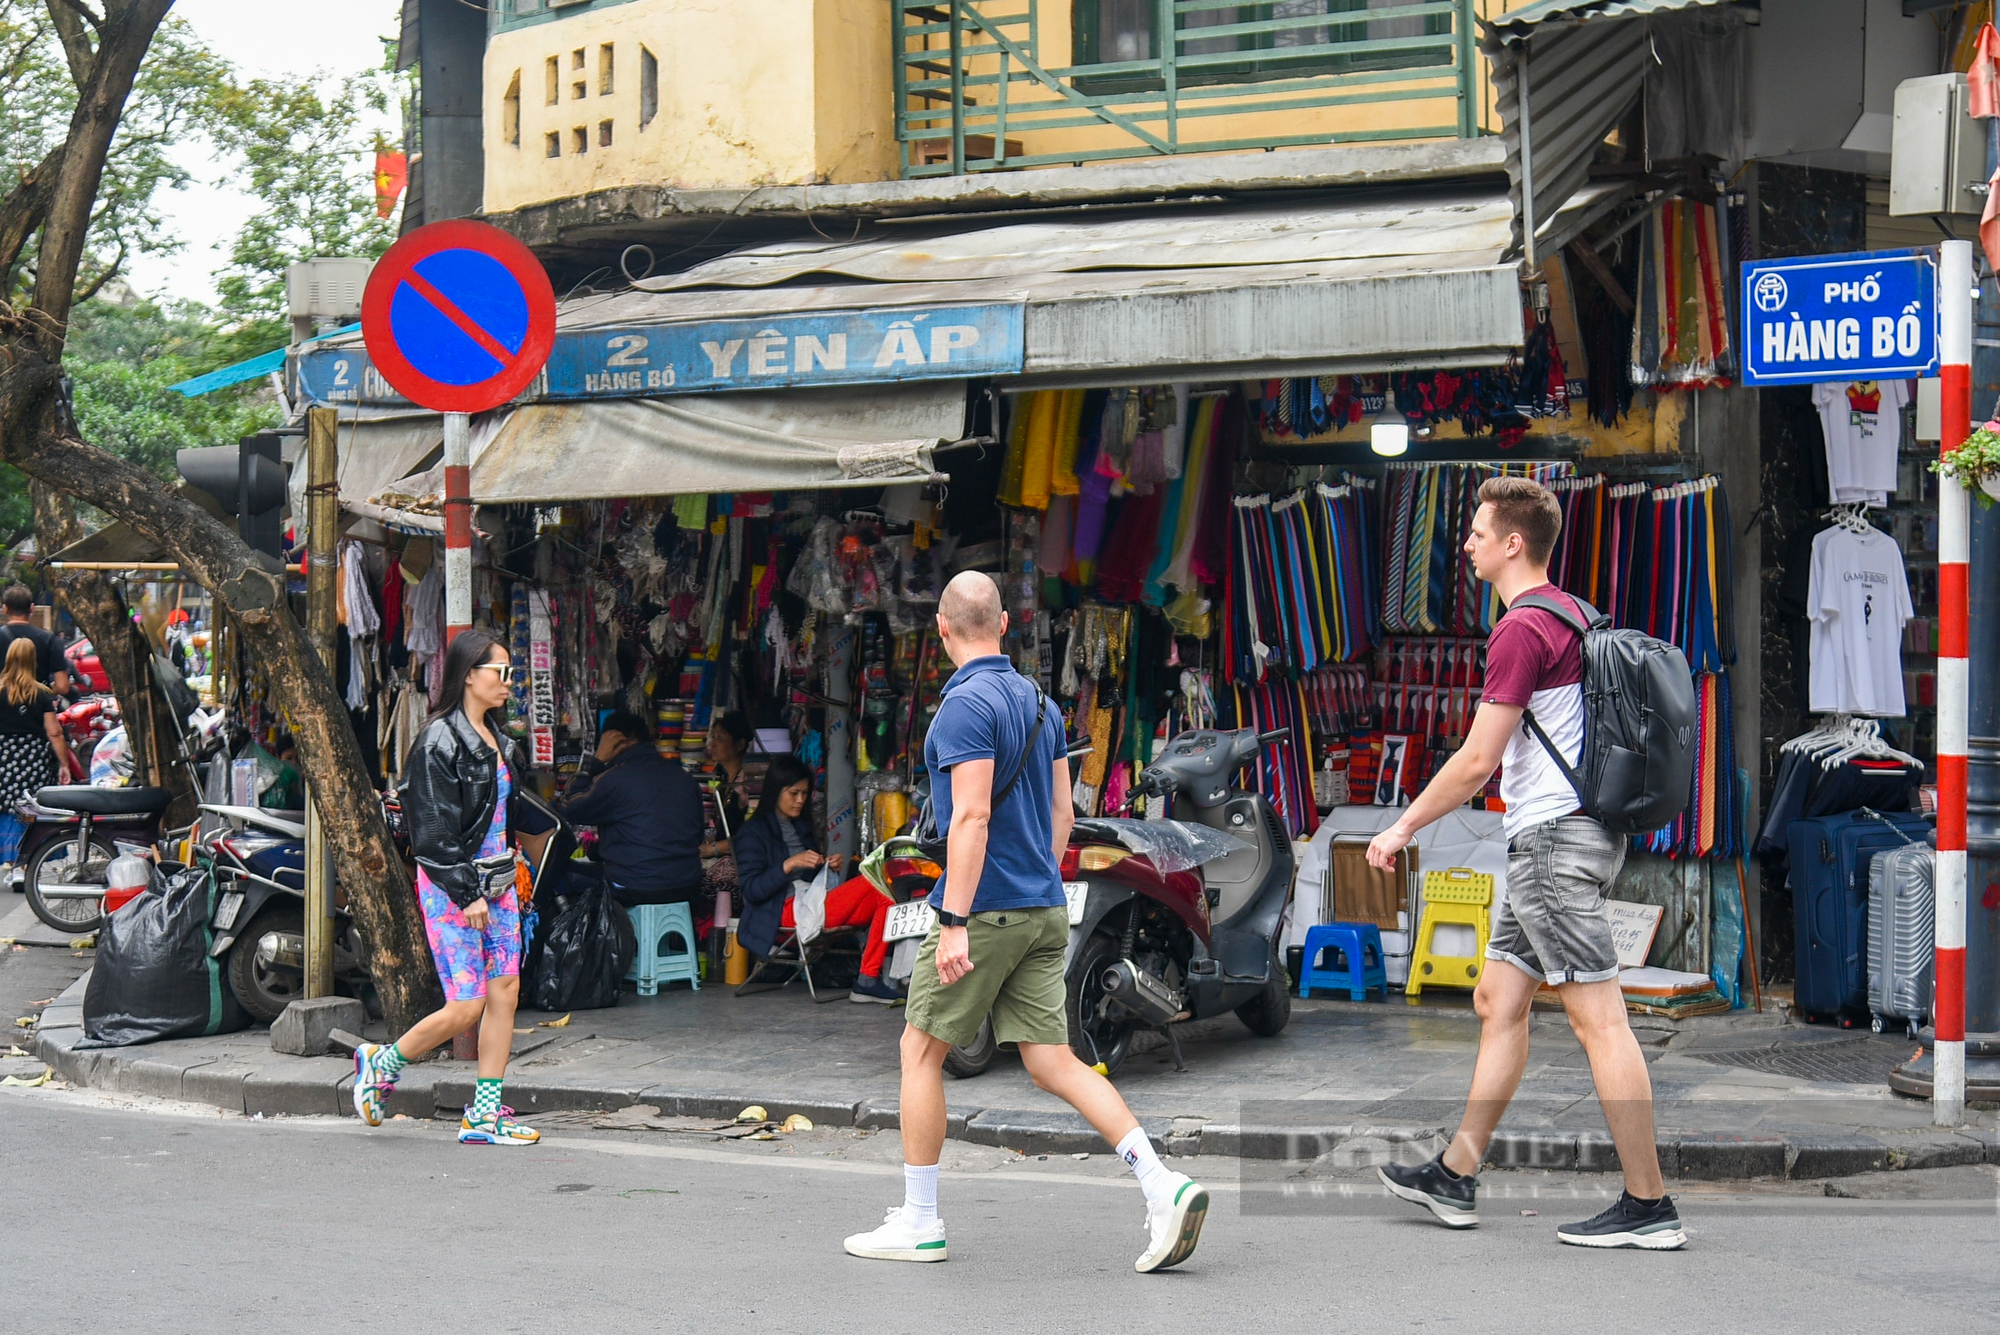 Vỉa hè ở Hà Nội bị &quot;cướp&quot; trắng trợn, người đi bộ bị đẩy xuống đường - Ảnh 1.